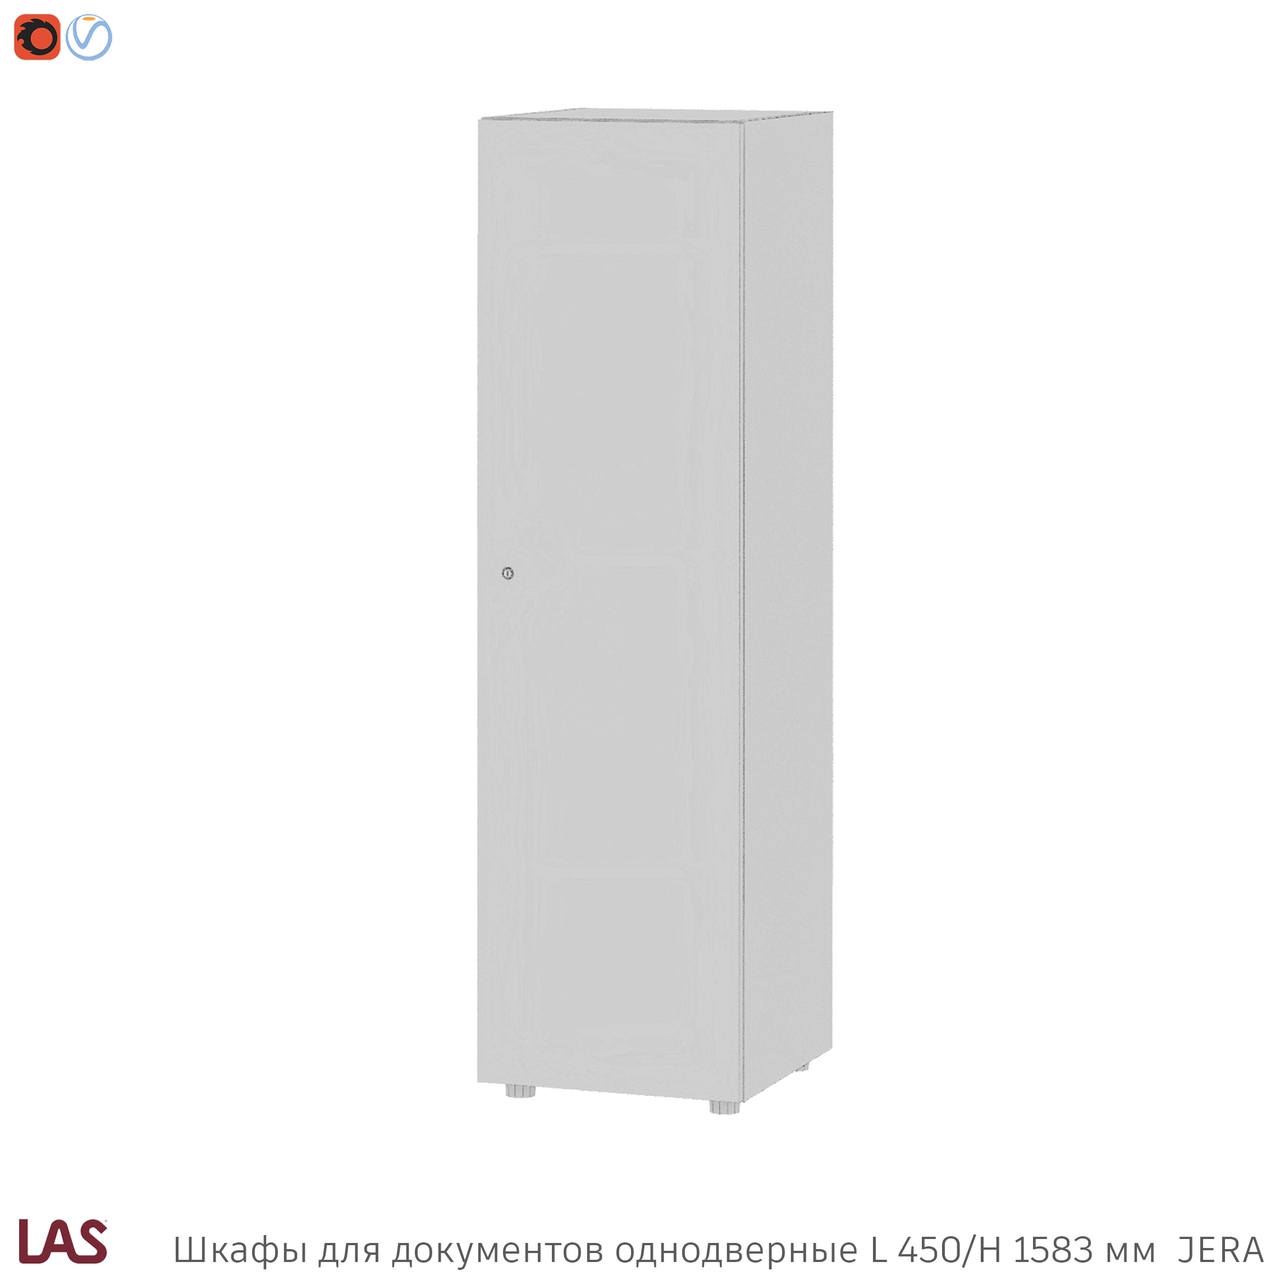 Превью G 3D-модели офисных шкафов LAS Jera 159988-159989